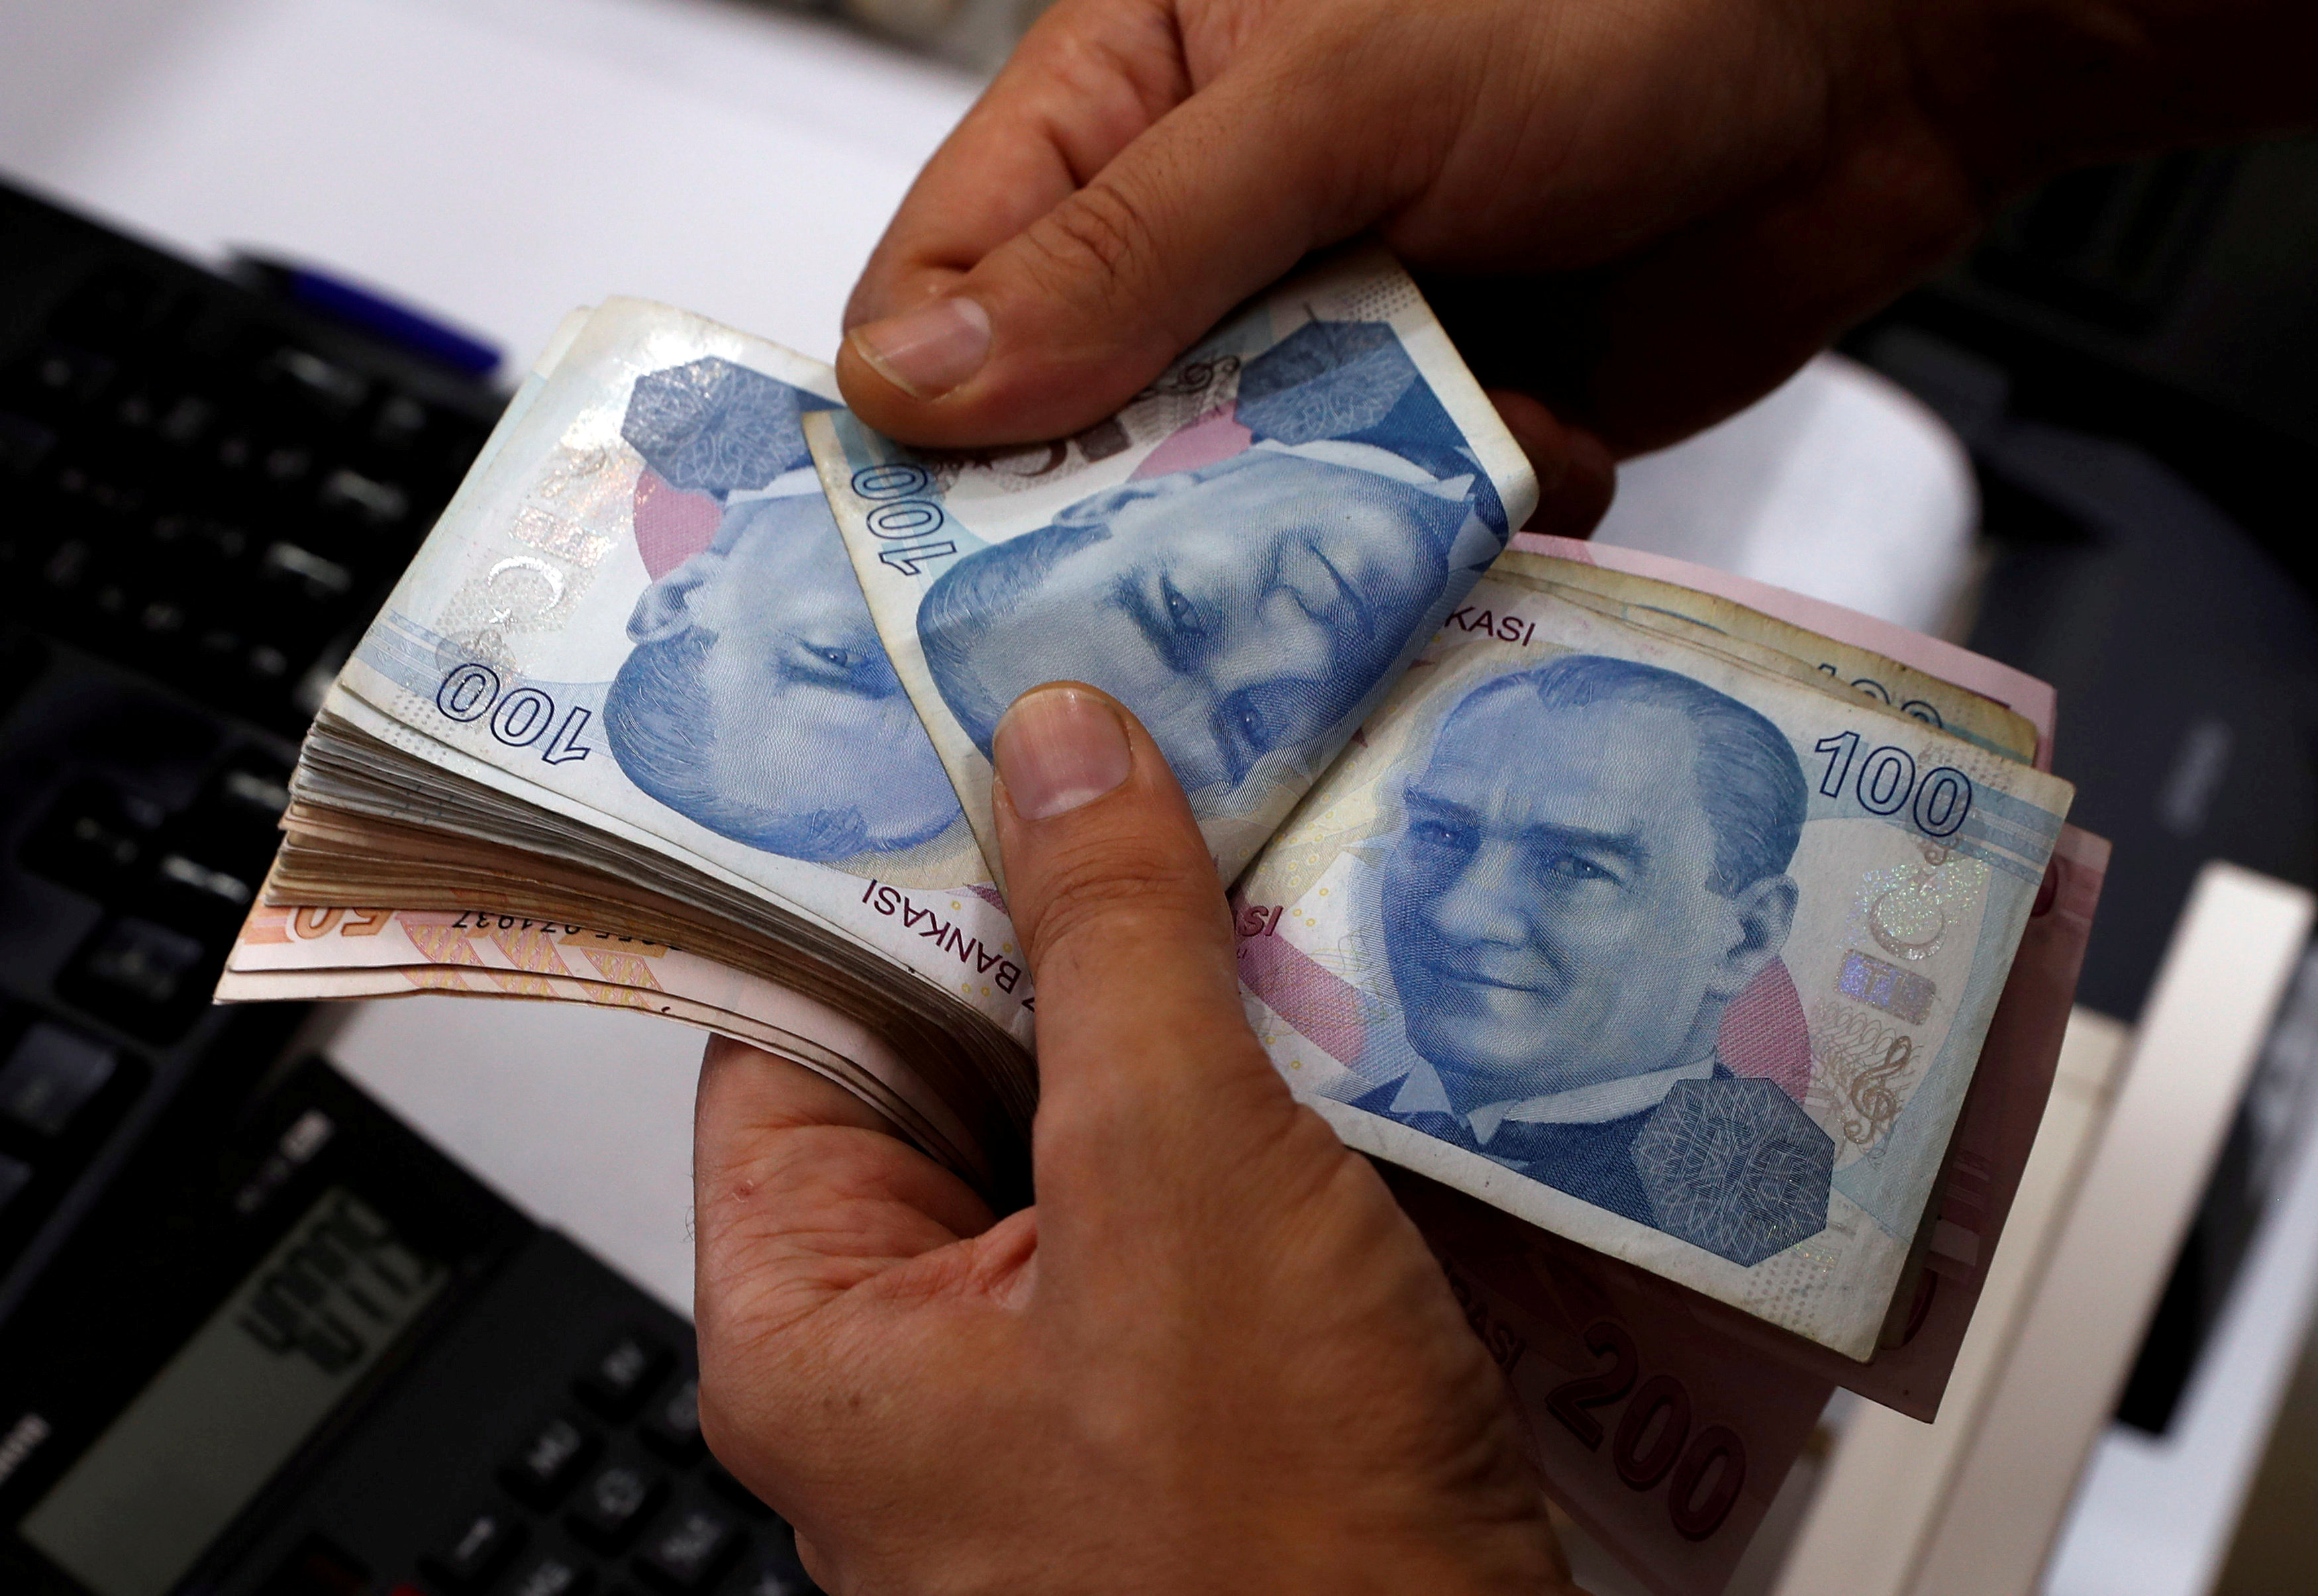 Κεντρική Τράπεζα Τουρκίας: Θα λάβει όλα τα μέτρα για τη χρηματοπιστωτική σταθερότητα